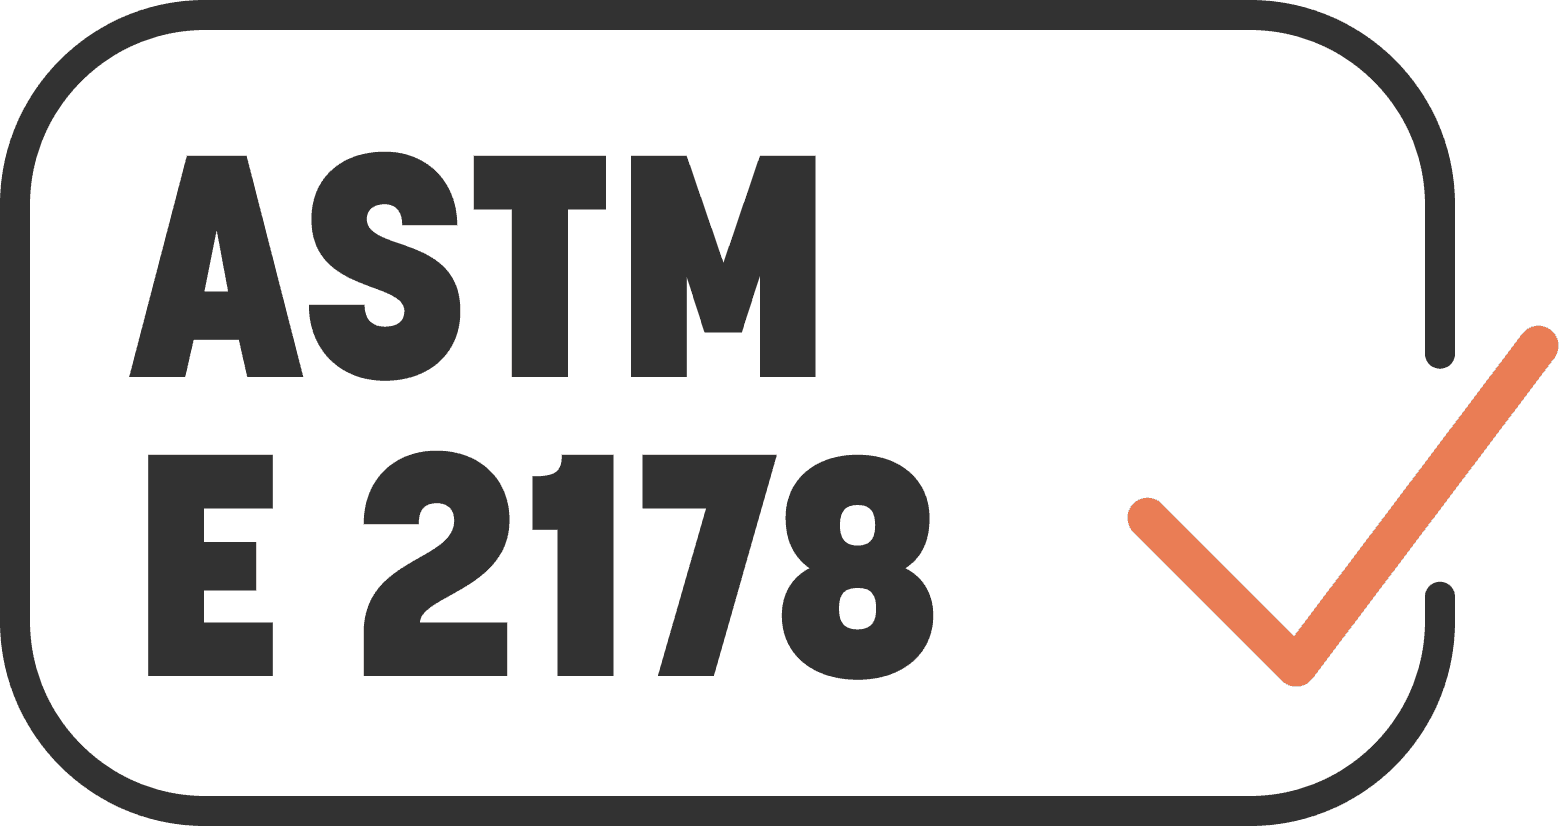 ASTM E 2178